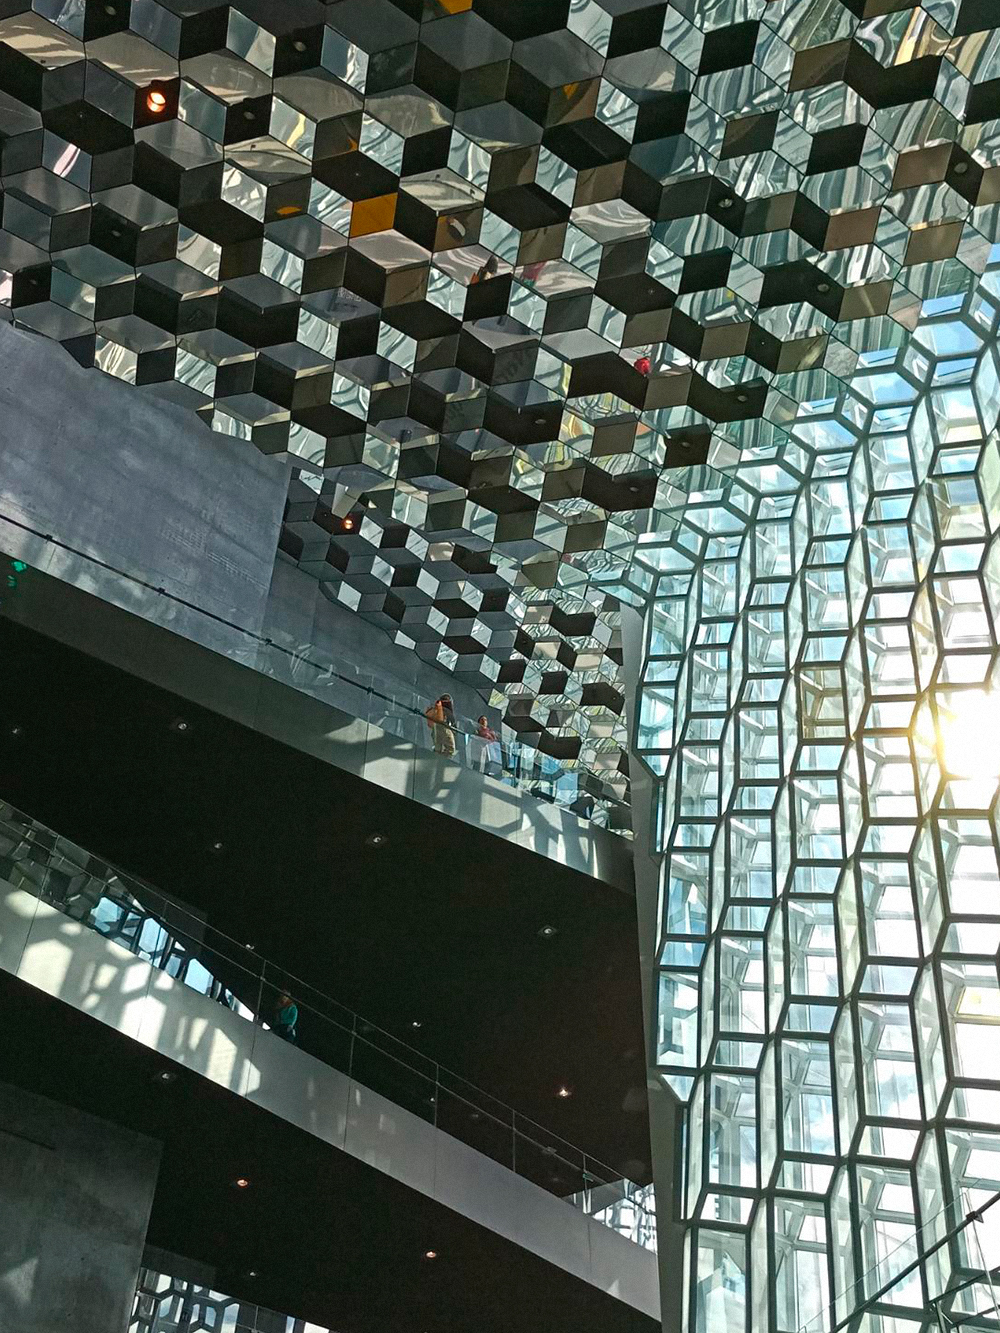 Снаружи концертный зал Харпы напоминает рыбацкую сеть, до отказа набитую сверкающей на солнце рыбой, а внутри он похож на зеркальный улей